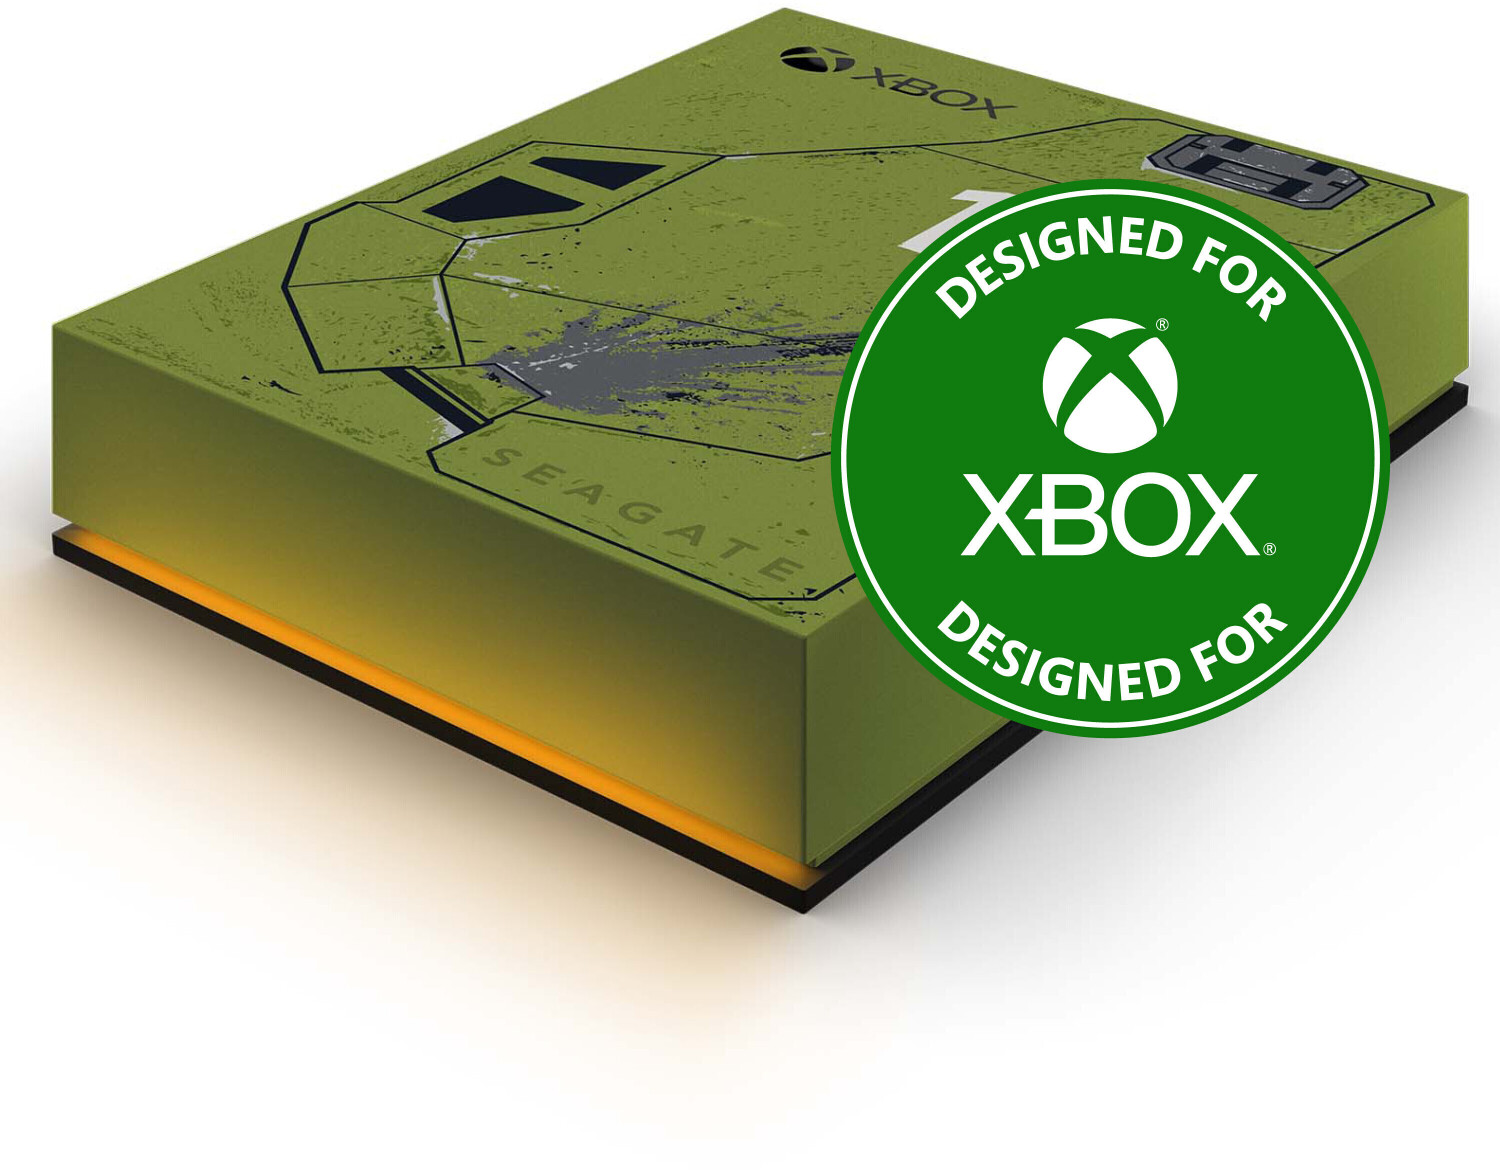 87,99 Xbox ab Drive for Game Preisvergleich | Seagate € bei